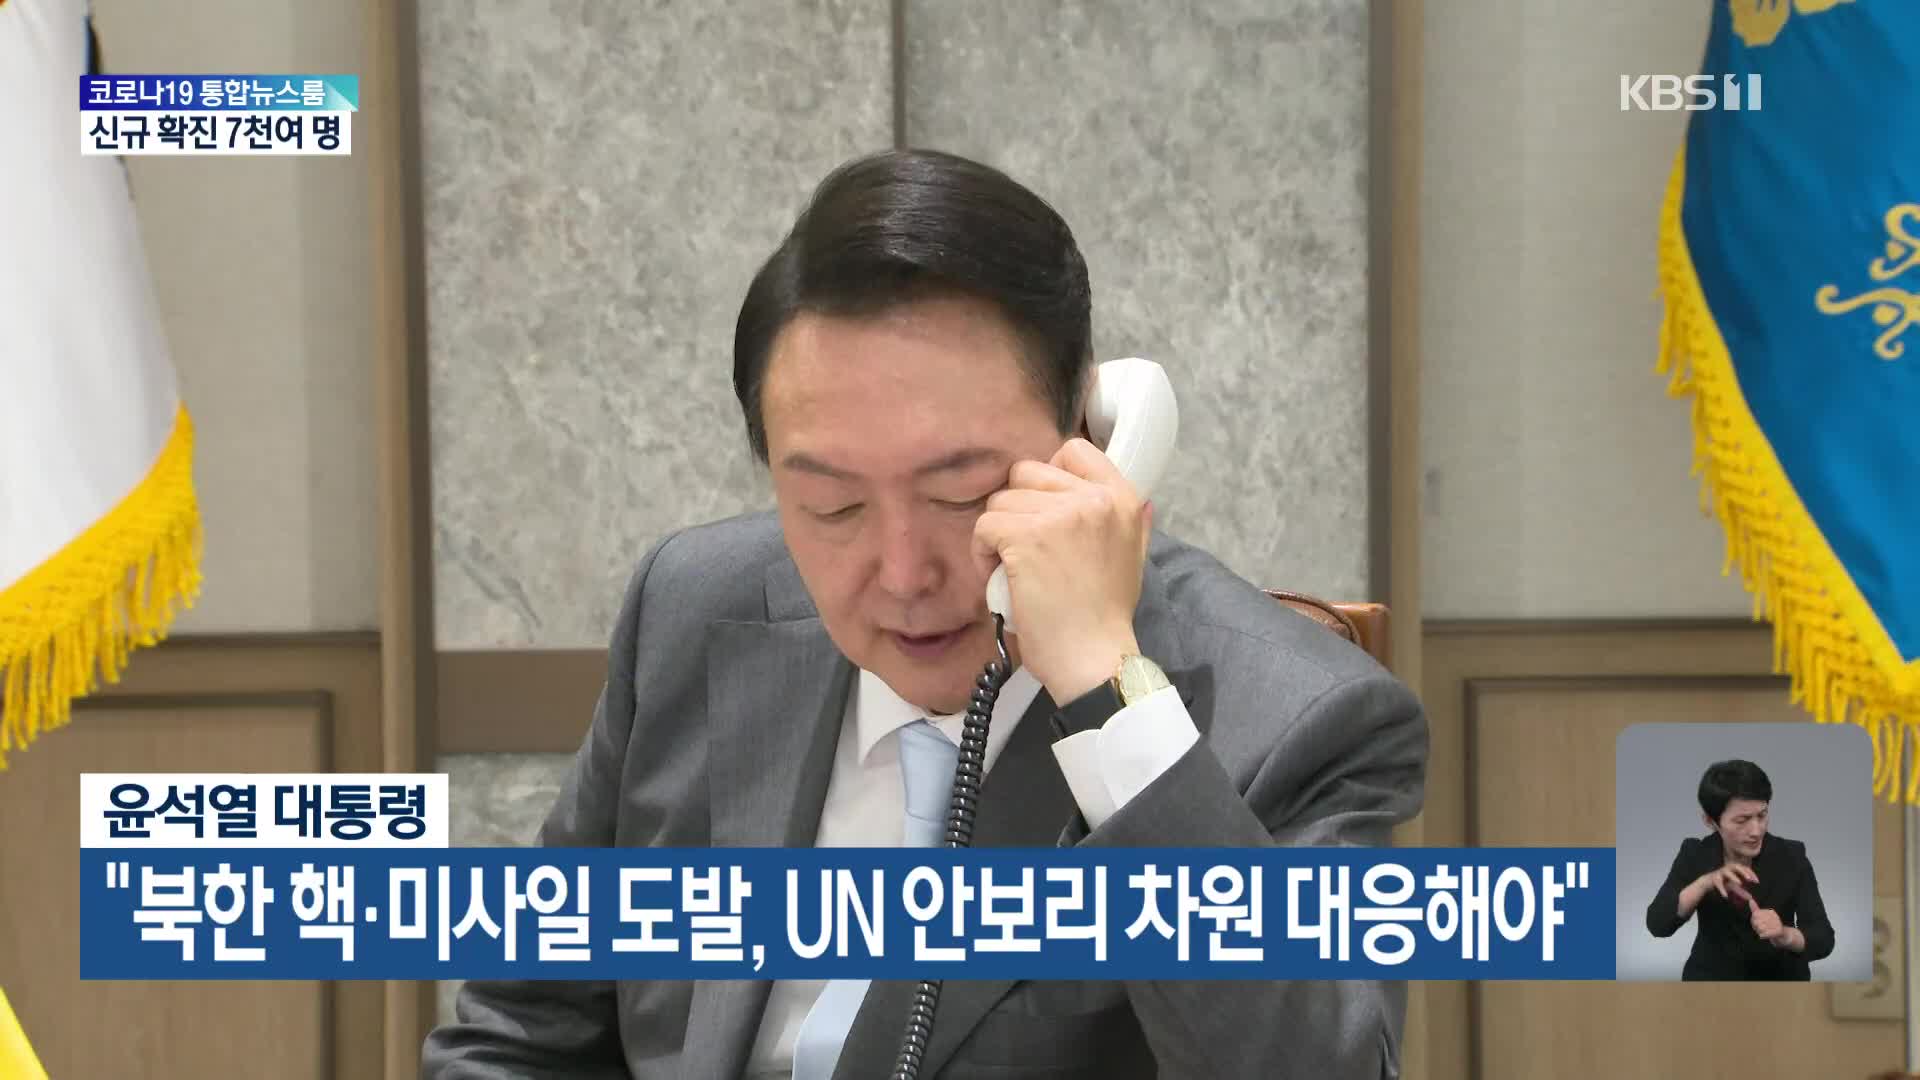 윤석열 대통령 “북한 핵·미사일 도발, UN 안보리 차원 대응해야”